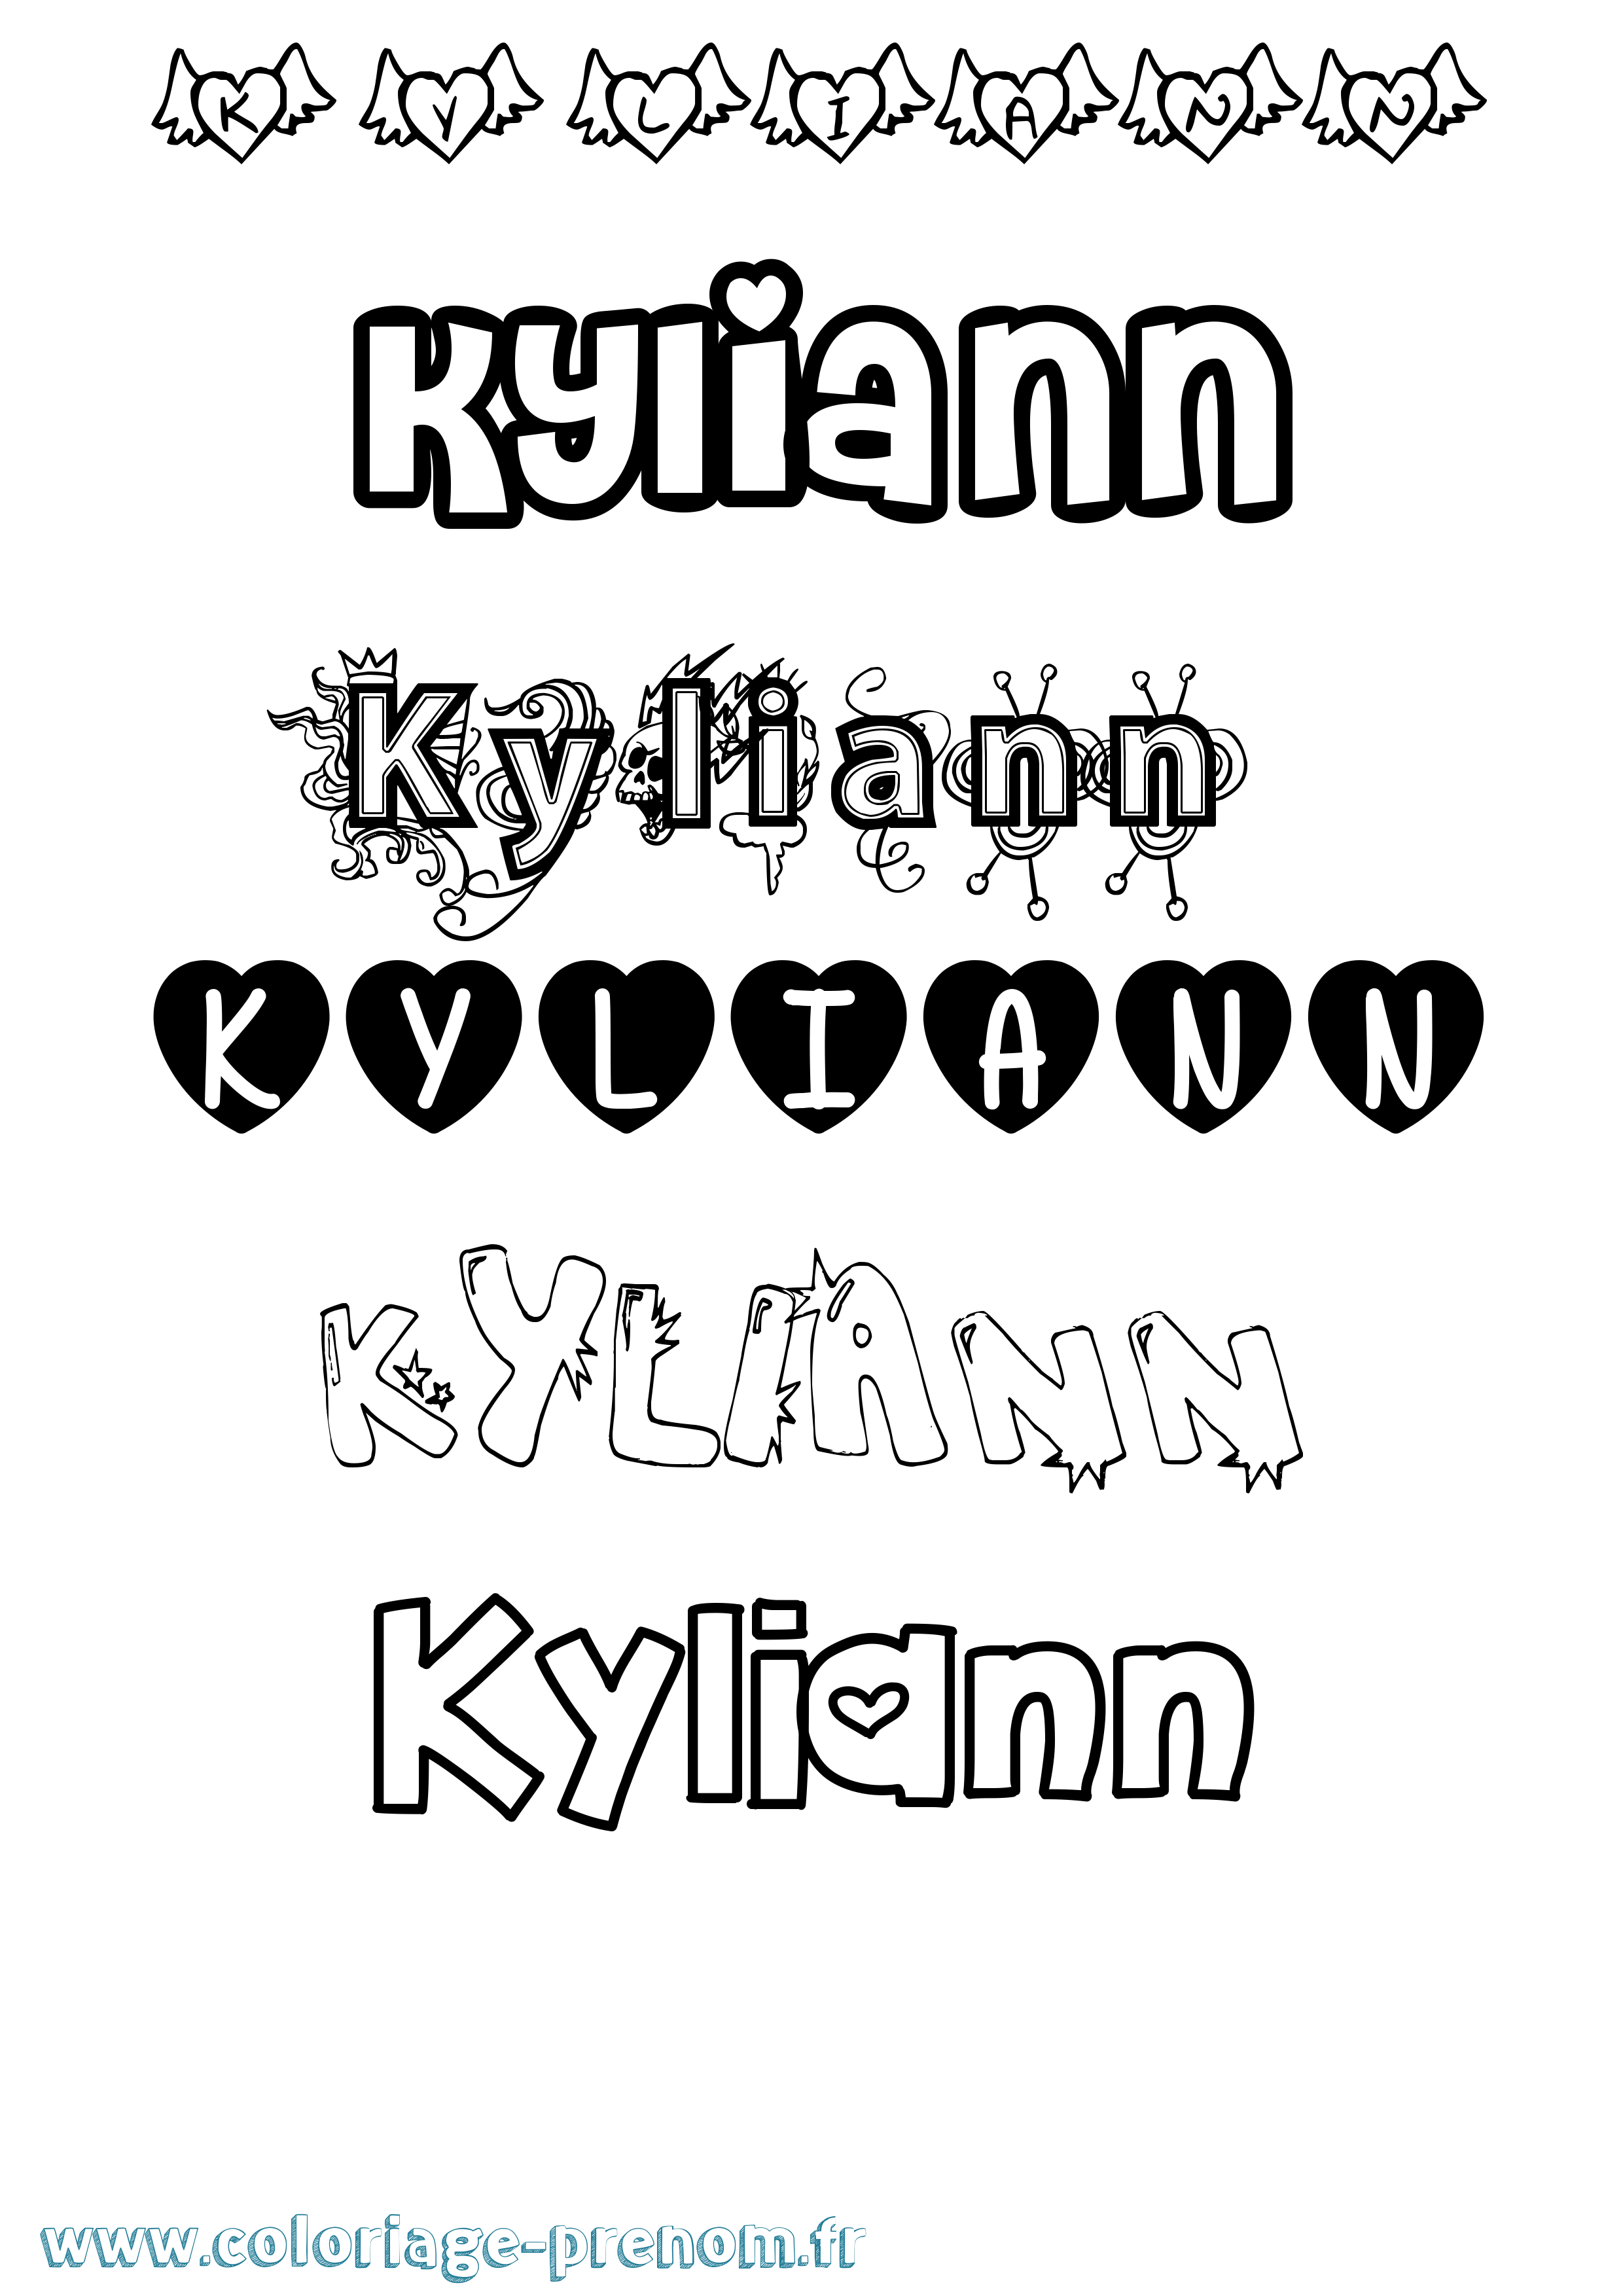 Coloriage prénom Kyliann Girly